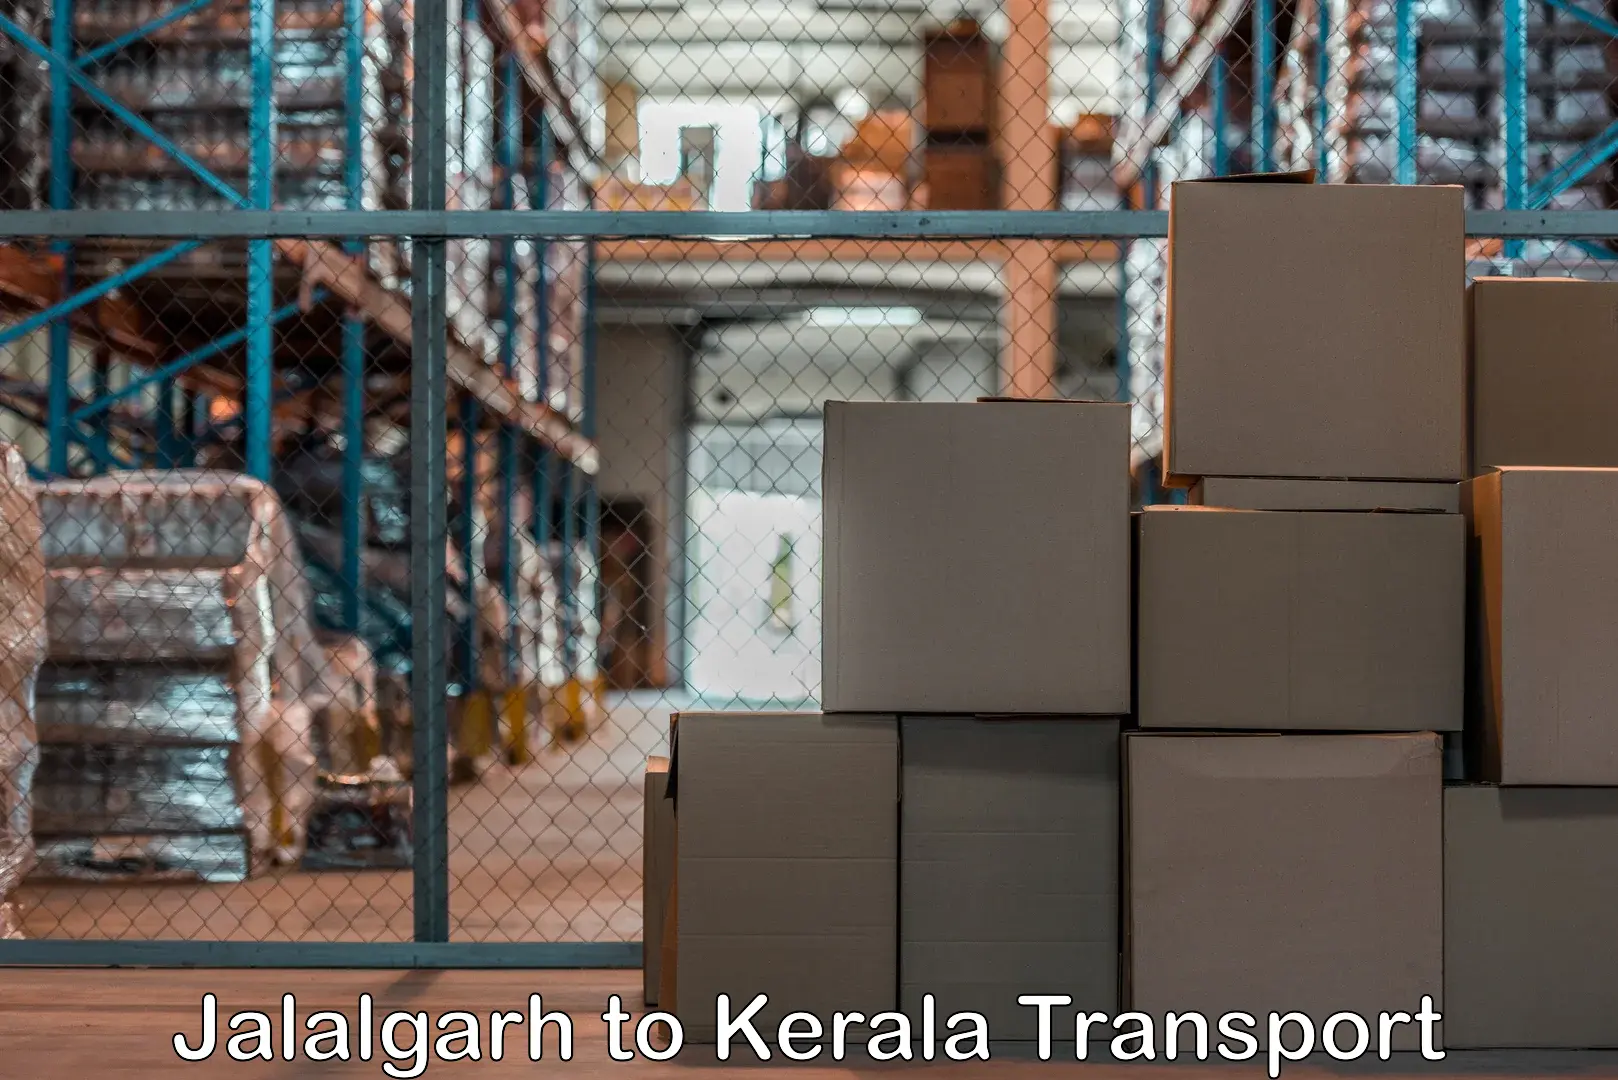 Air freight transport services Jalalgarh to IIIT Kottayam